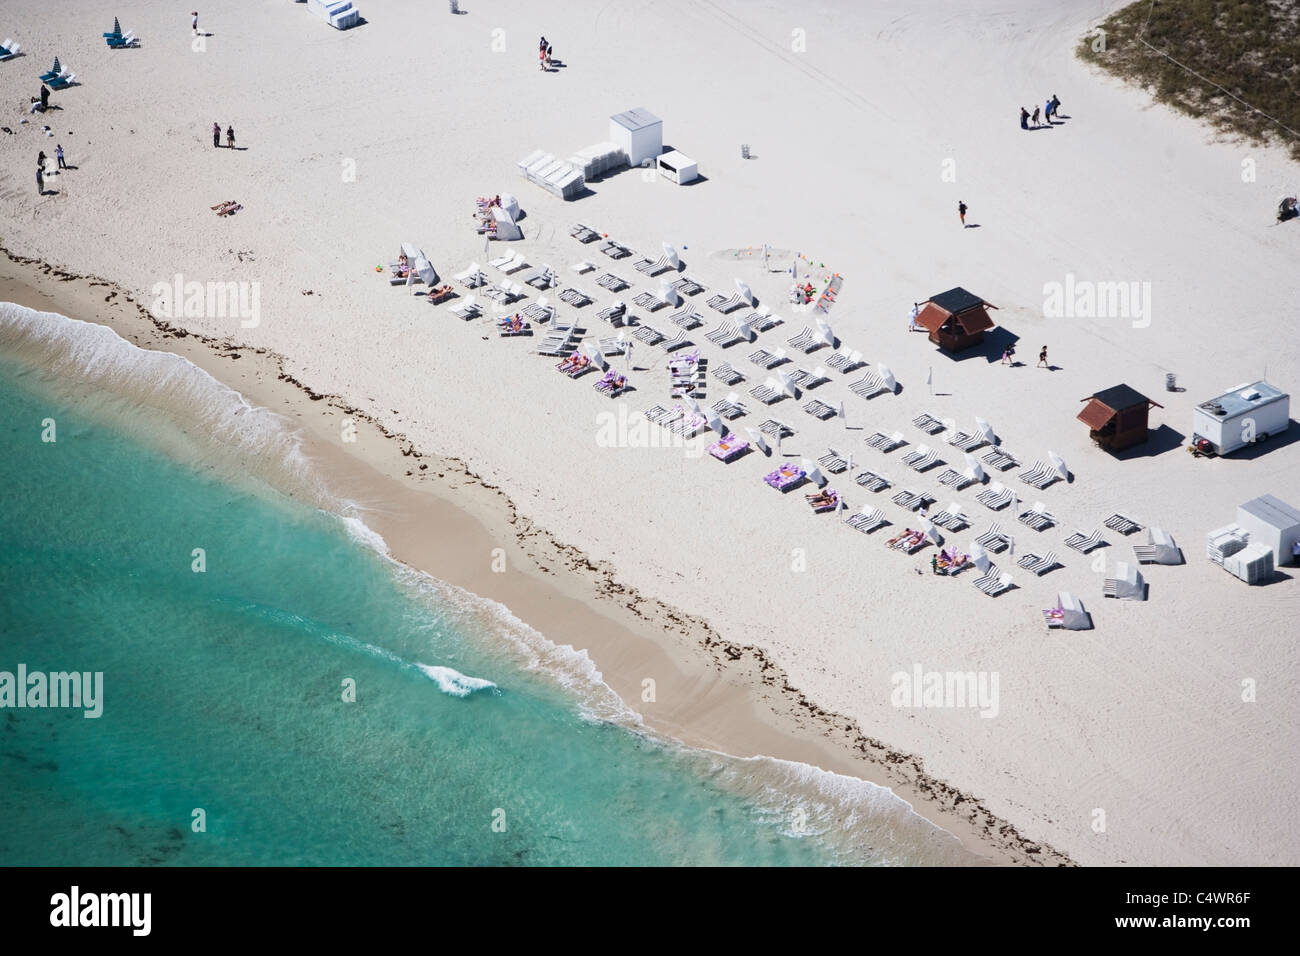 USA,Florida,Miami,Aerial view of sandy beach Stock Photo